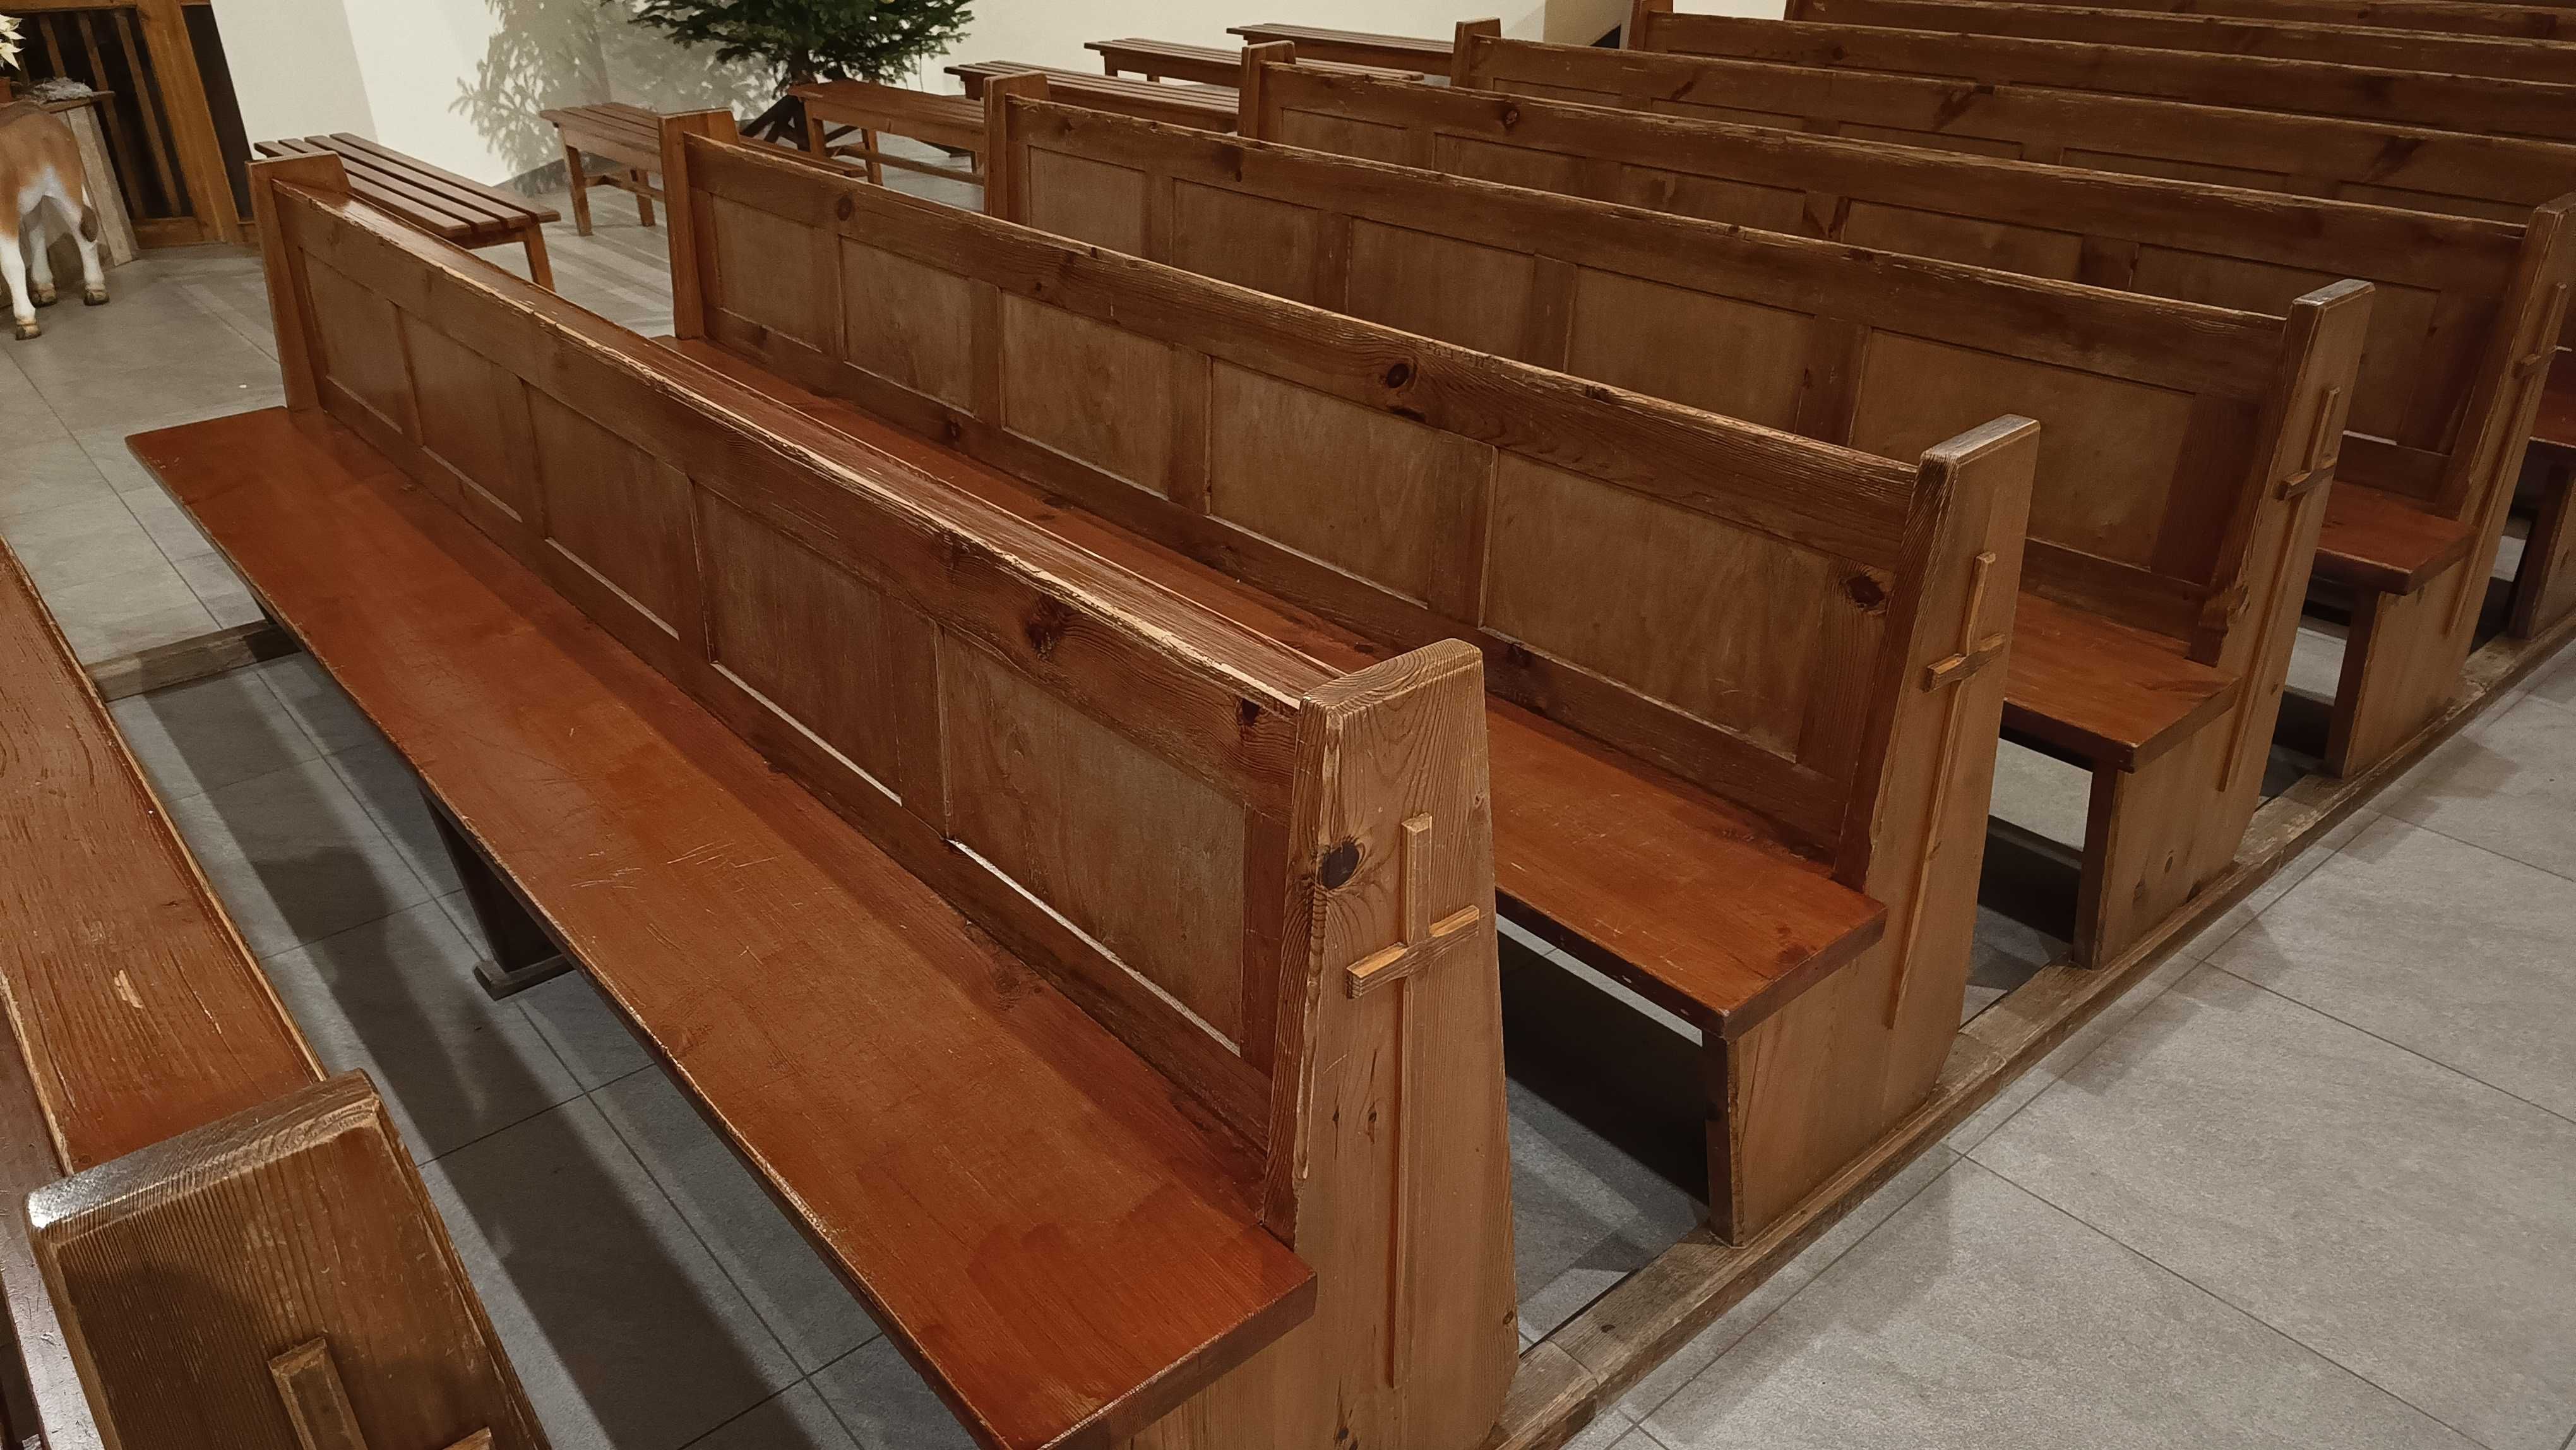 Ławki drewniane modrzew kościelne 3m długości